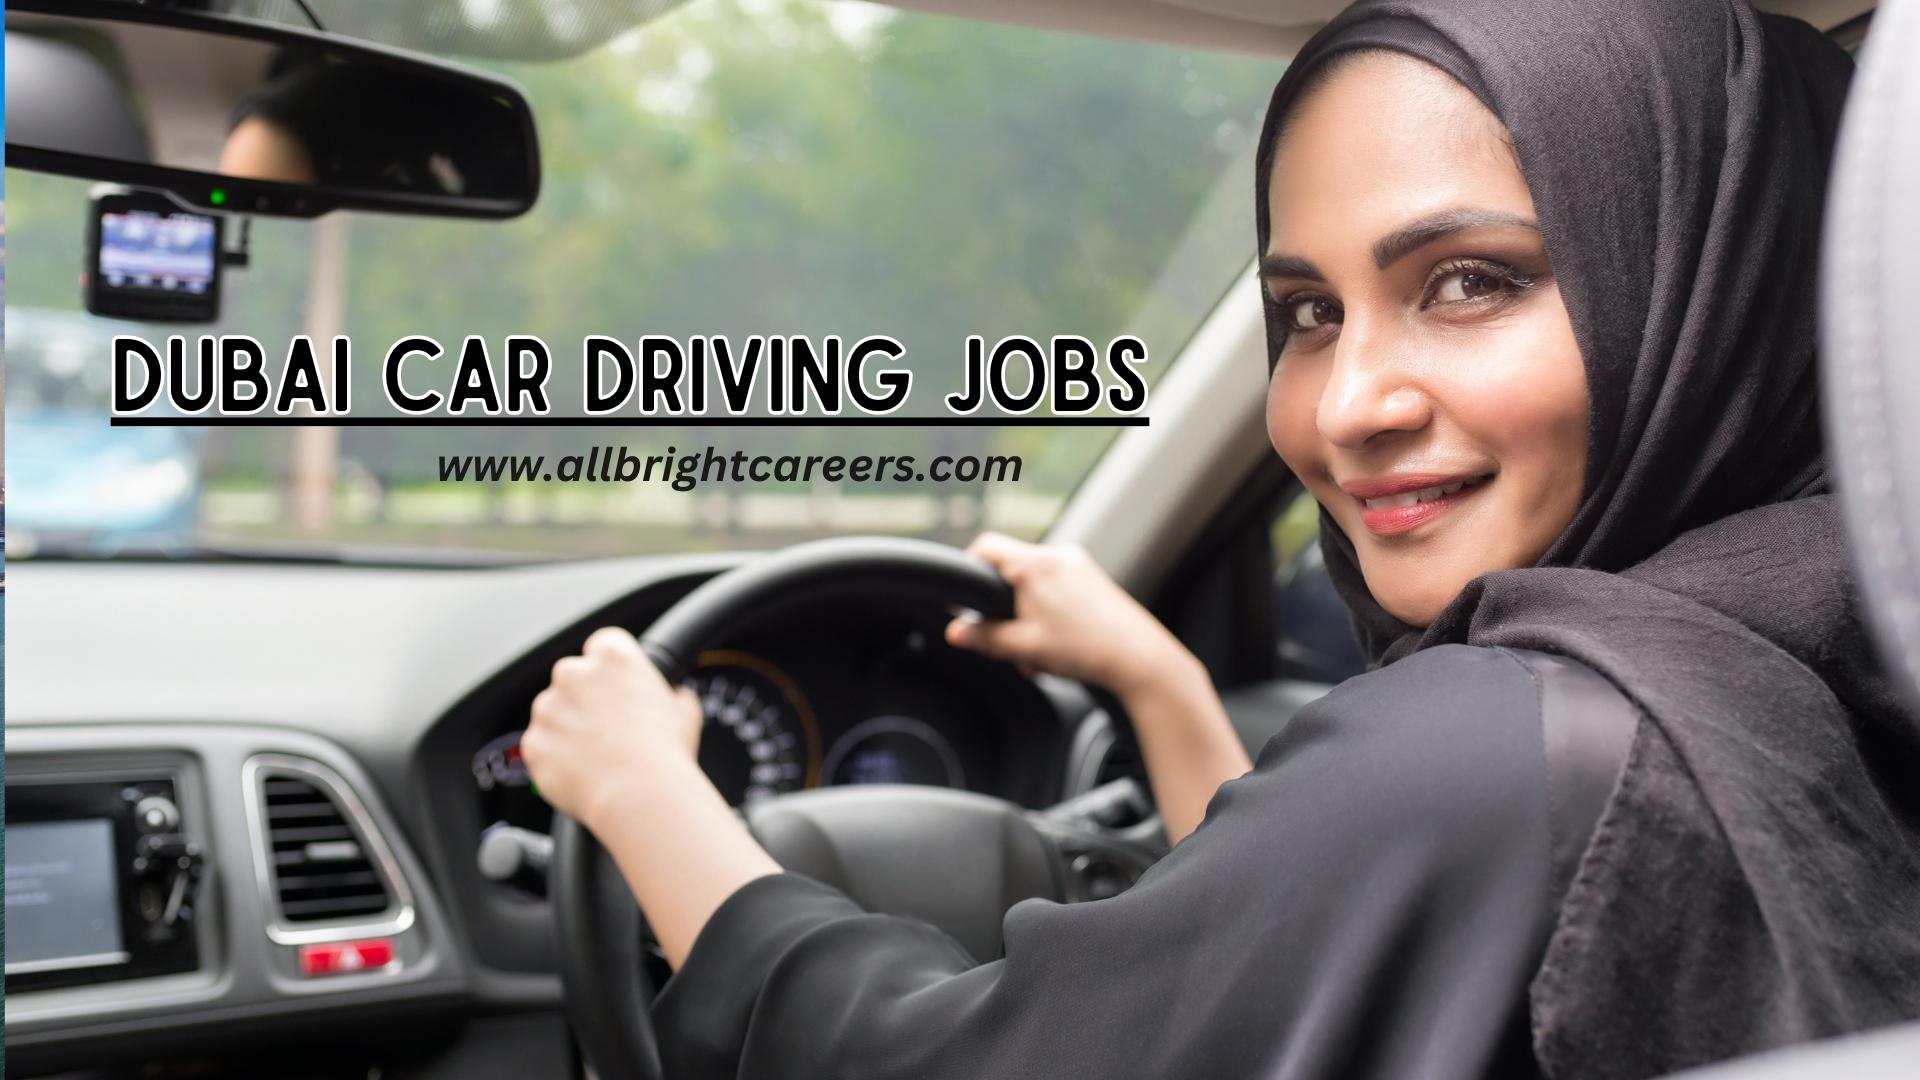 Dubai Car driving jobs